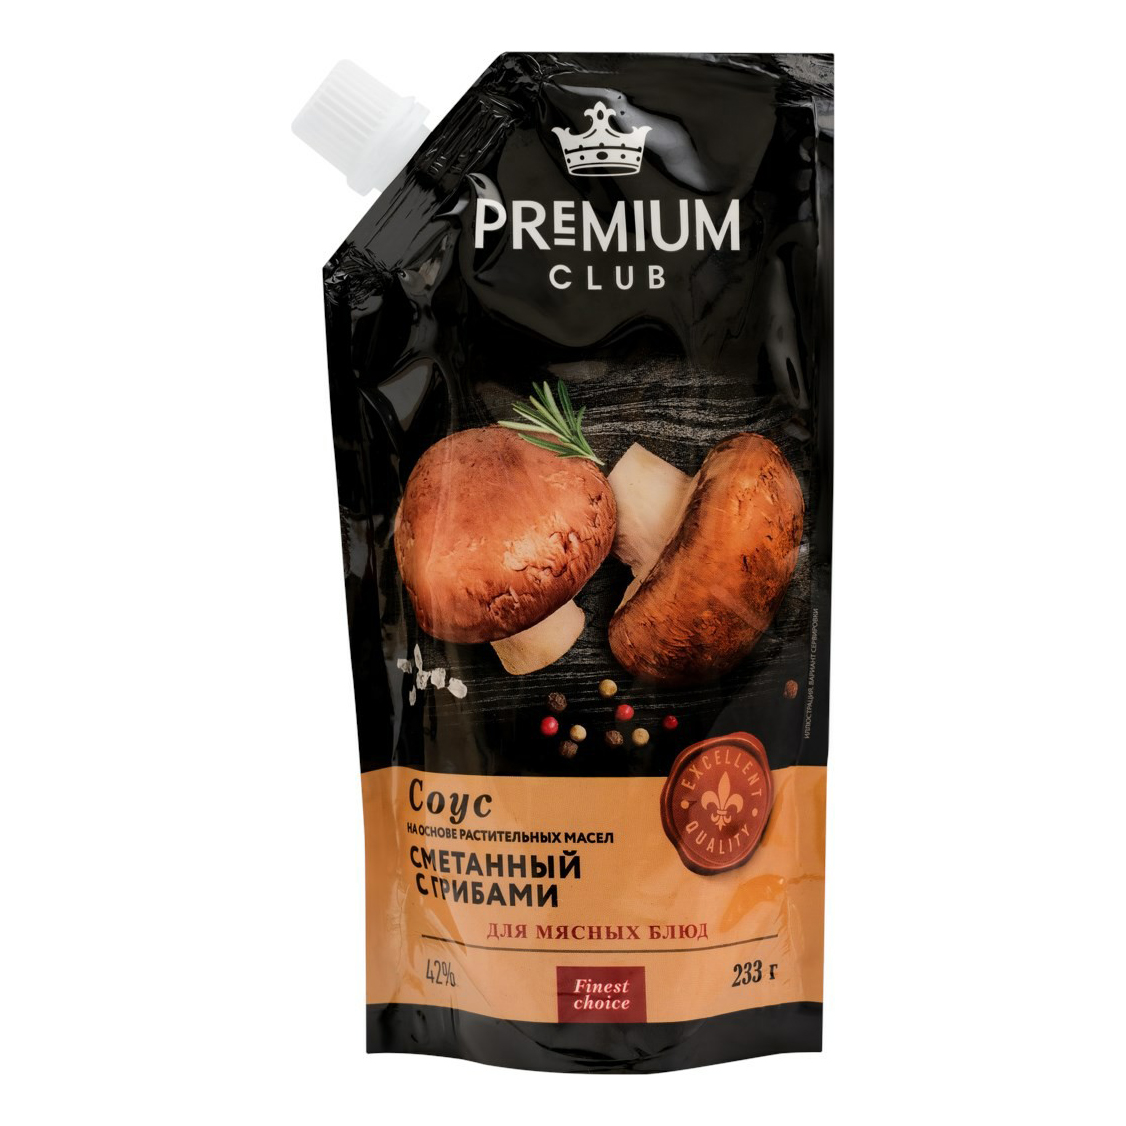 Соус Premium Club Сметанный с грибами 42% 233 г